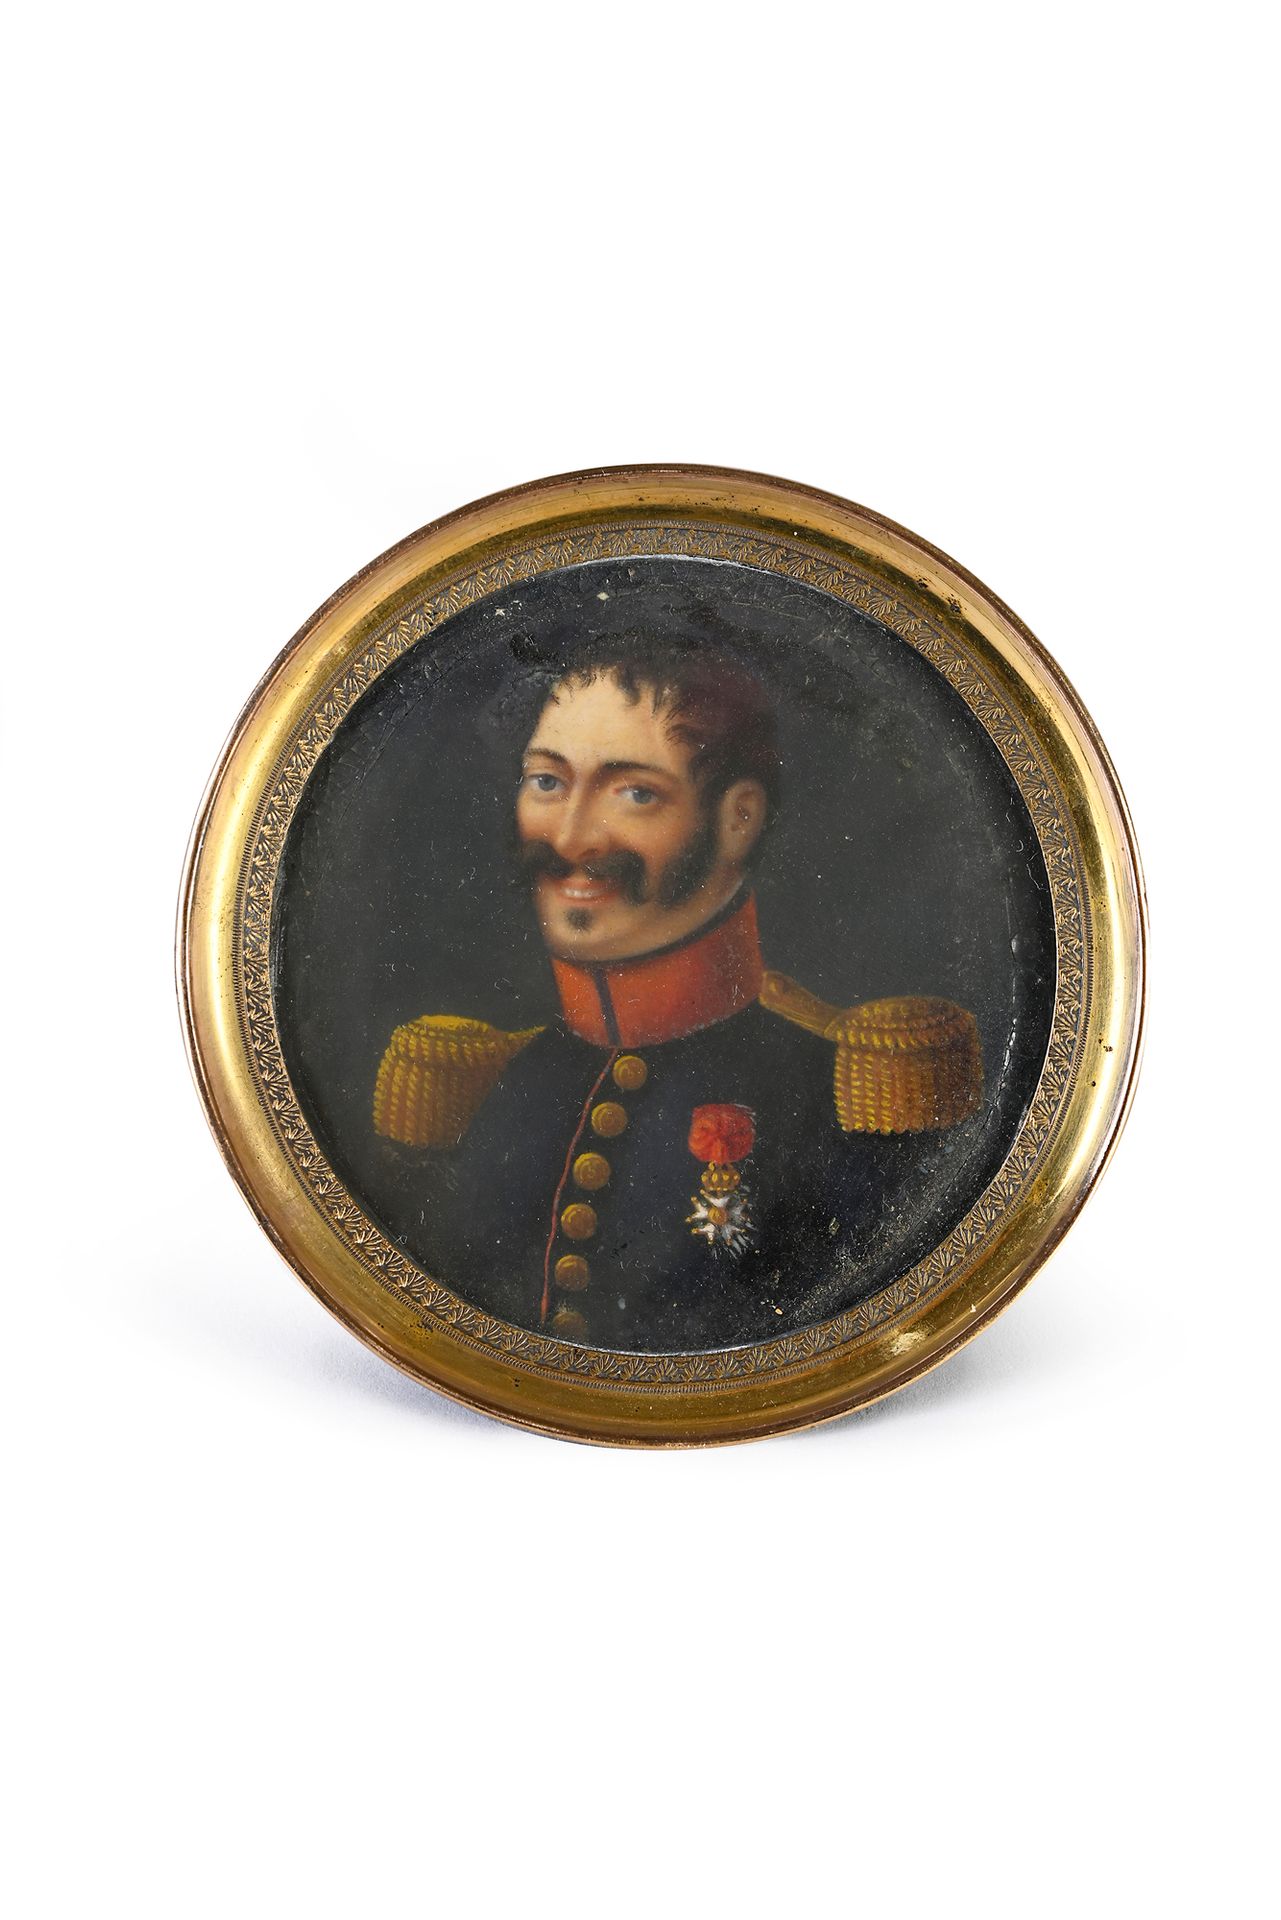 Null 圆形彩绘微型画，描绘了一位被授予荣誉军团勋章的帝国军官。
19 世纪中期。
镀金金属框架。
直径：5.4 厘米
(略有缺料）